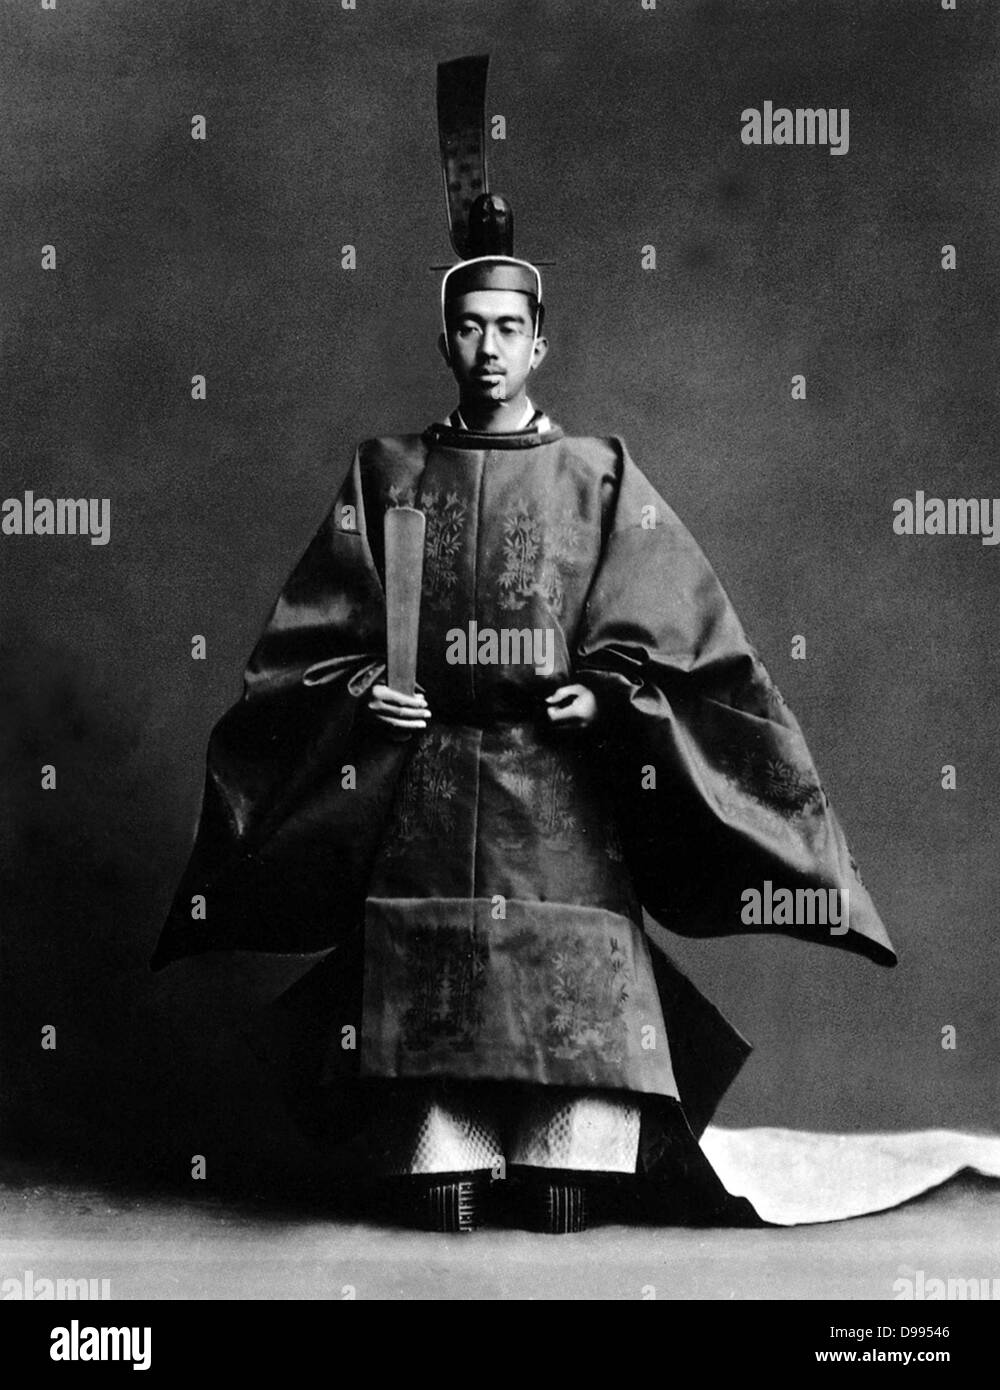 Hirohito (1901-1989) 124Imperatore del Giappone 1926-1989. L'Imperatore durante la sua incoronazione, vestito di vesti di Lo Shinto sommo sacerdote della religione di stato. Foto Stock